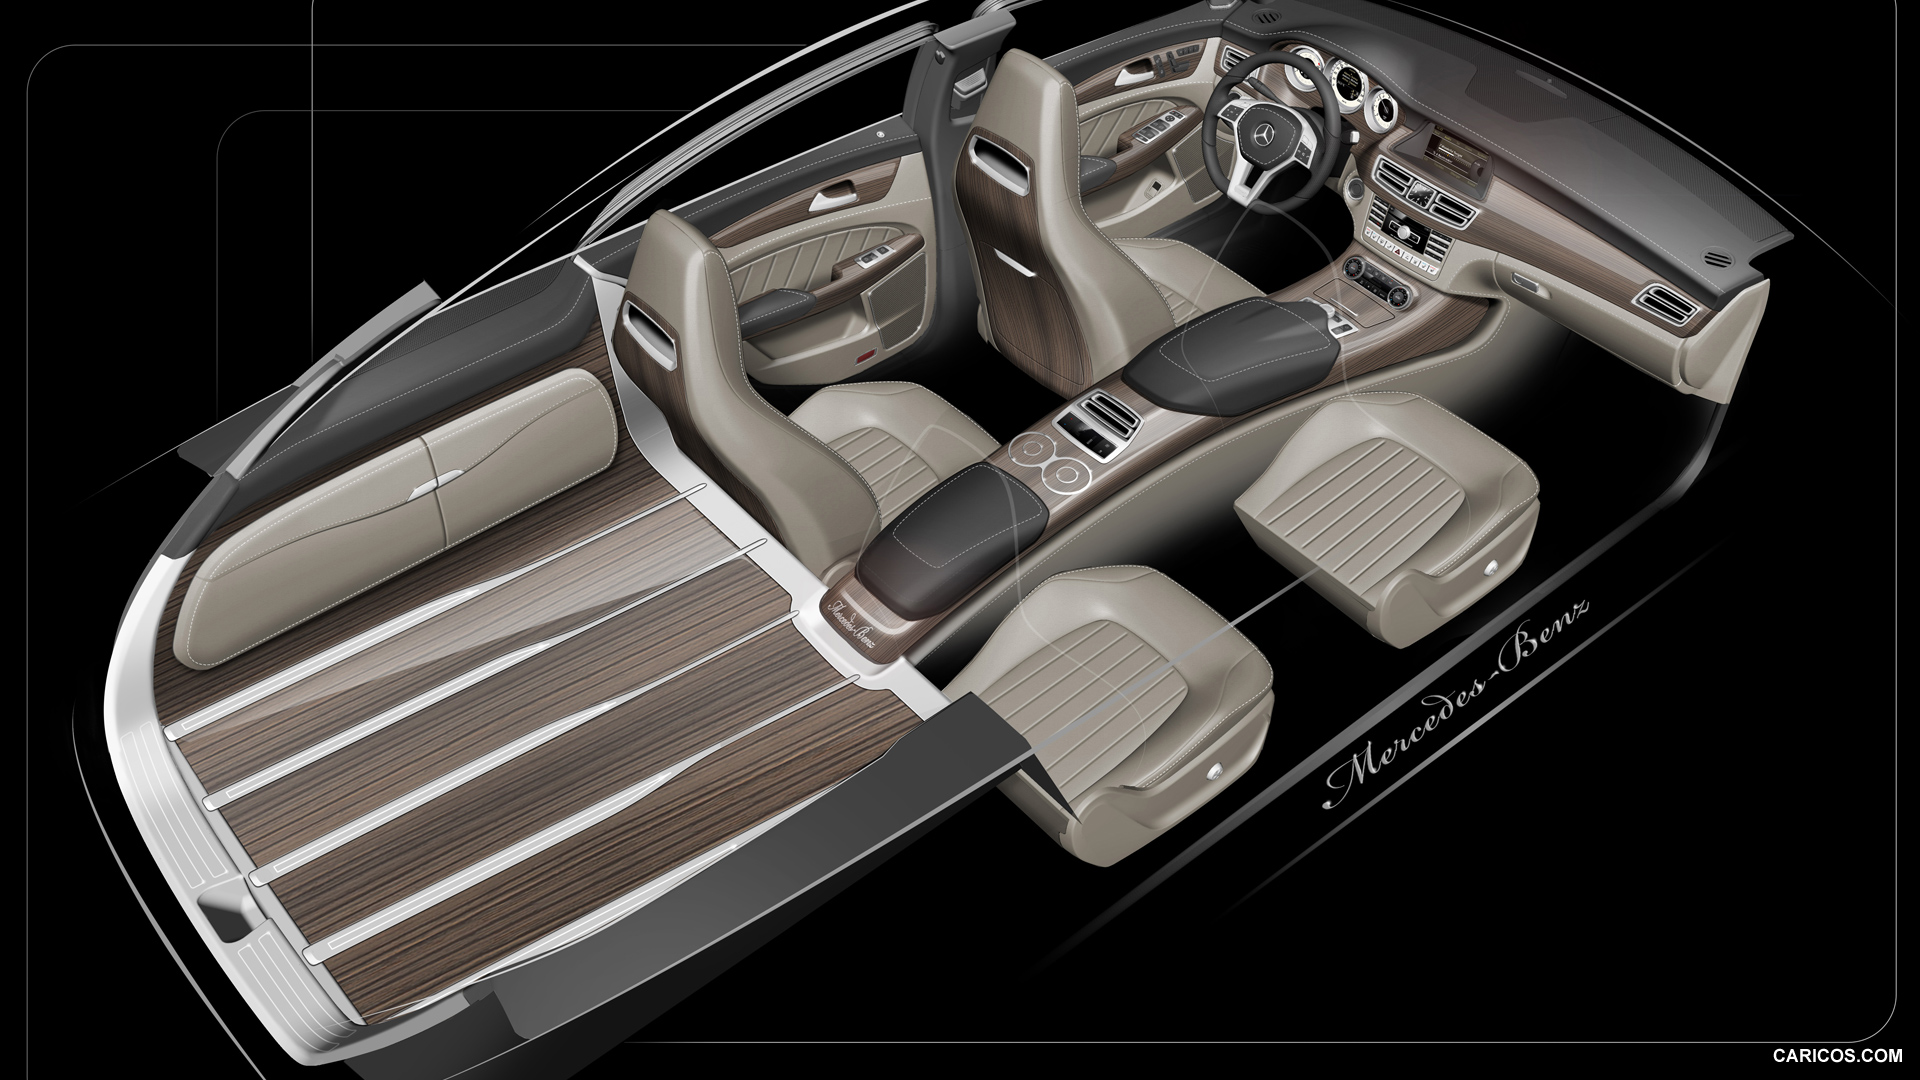 2013 Mercedes-Benz CLS Shooting Brake - Design Sketch, #140 of 184